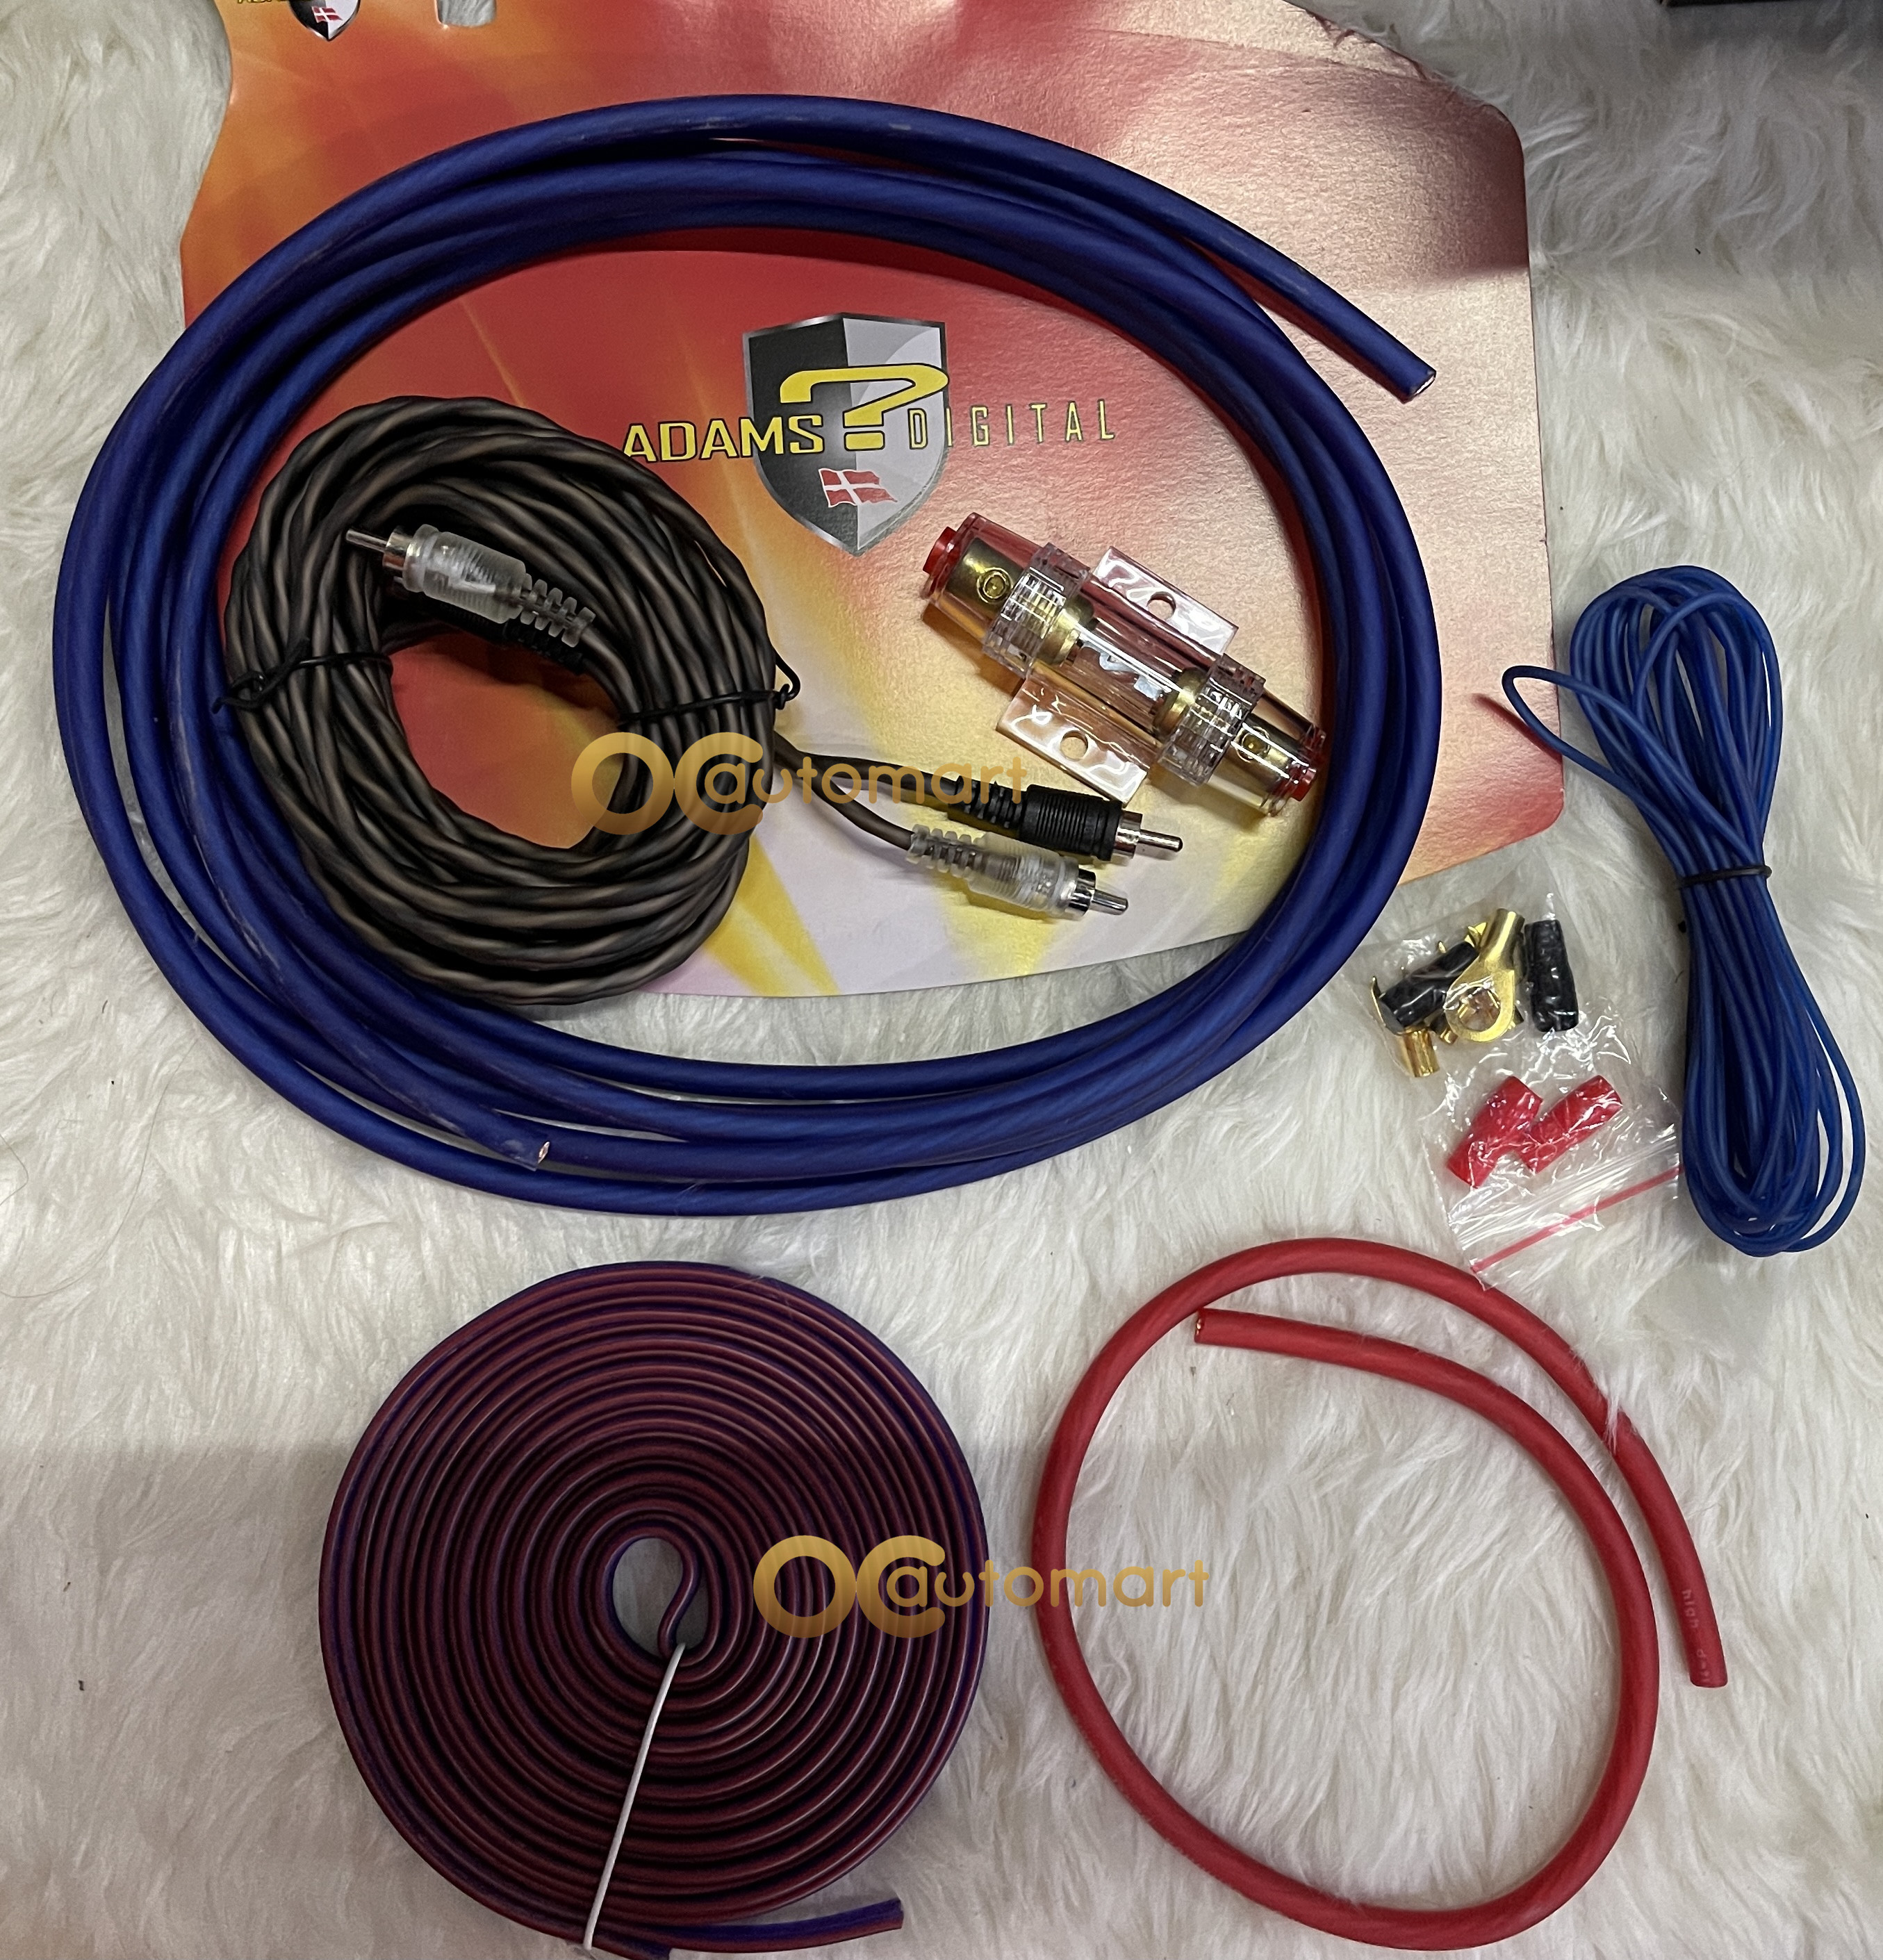 Adams Digital 8GA Amplifier Wire Kit Wiring Kit Ad-001 For 2 Channel Amplifier